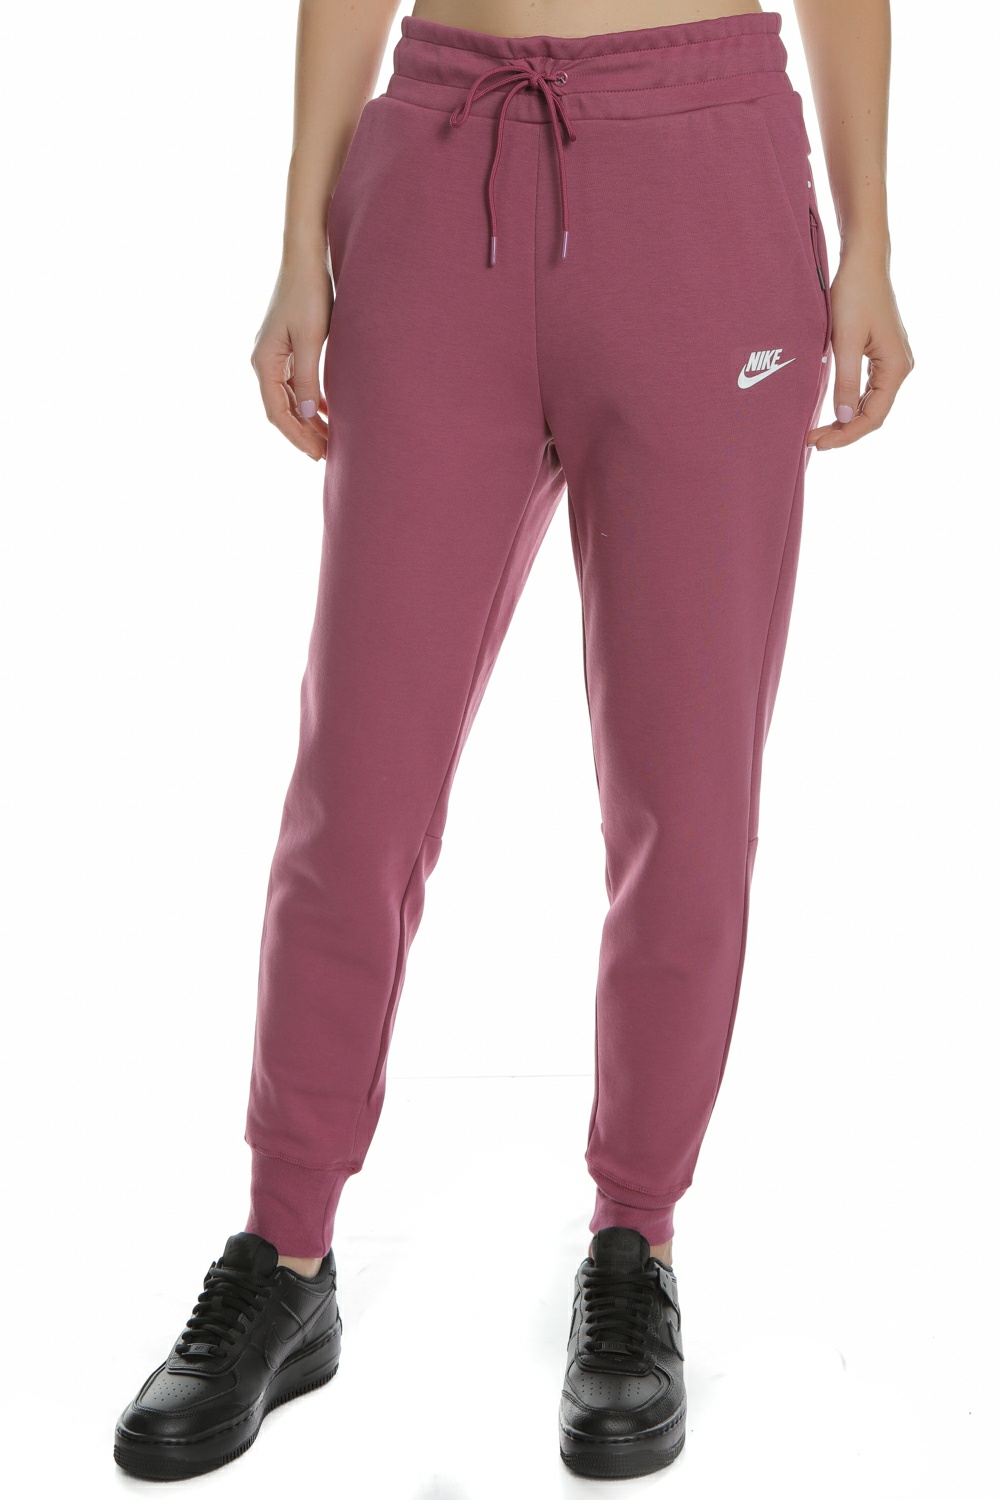 Γυναικεία/Ρούχα/Αθλητικά/Φόρμες NIKE - Γυναικείο παντελόνι φόρμας NIKE Sportswear Tech Fleece ροζ